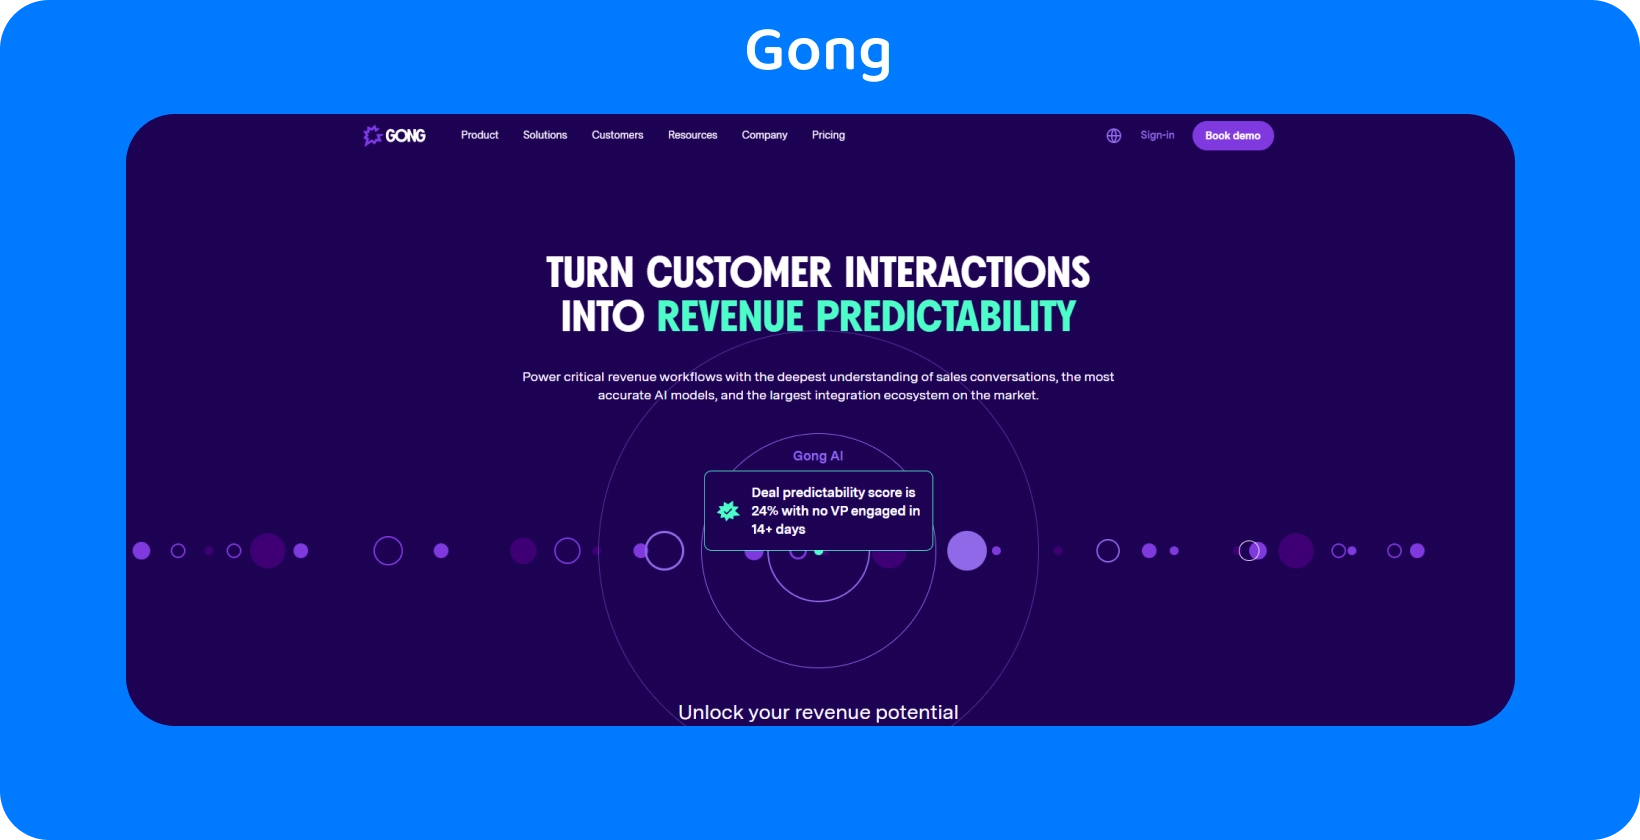 Η διεπαφή του Gong υπογραμμίζει τη μετατροπή αλληλεπίδρασης πελατών σε προβλεψιμότητα εσόδων, χρησιμοποιώντας AI για πωλήσεις.